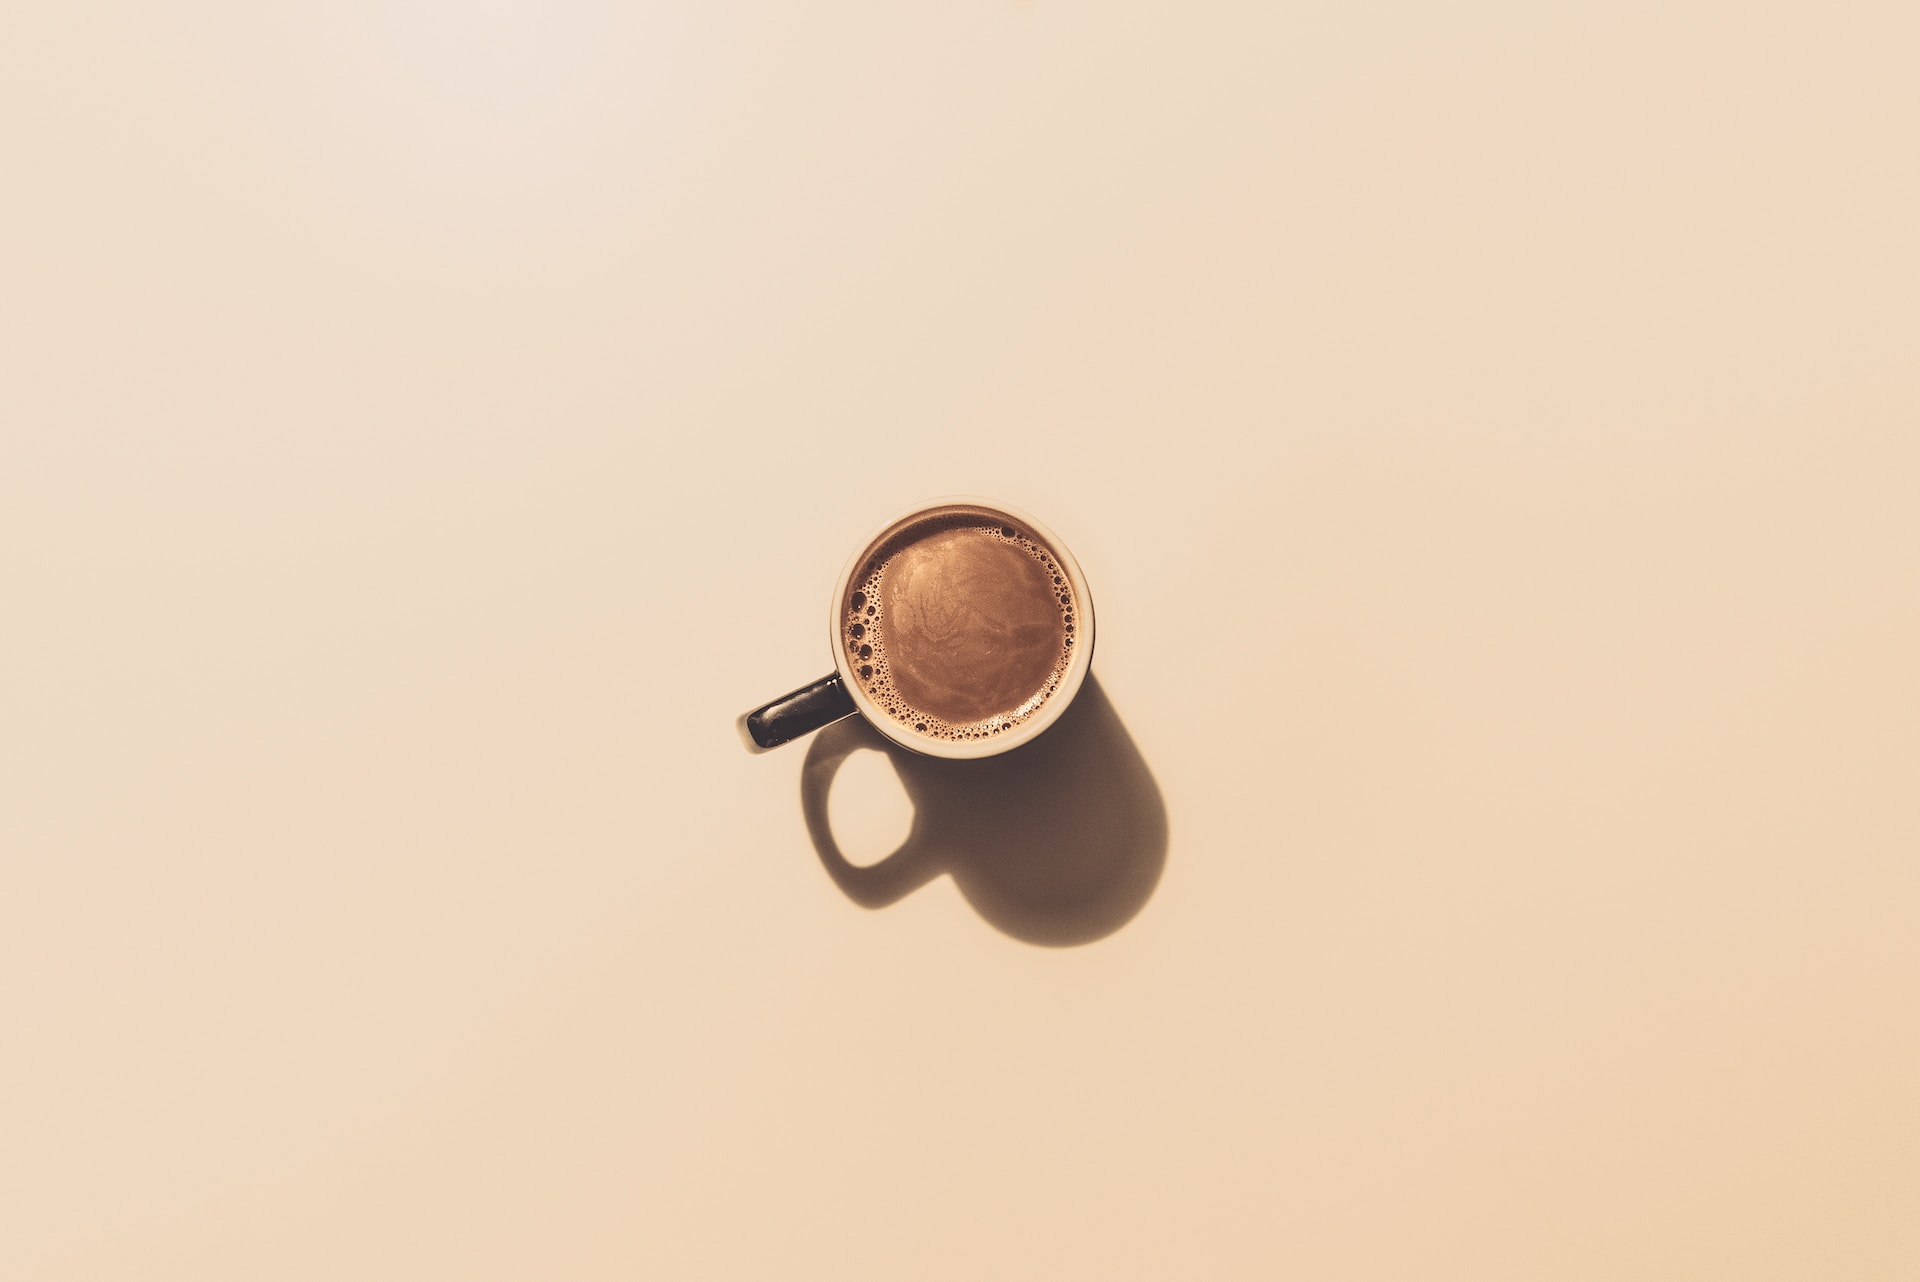 Kaffee und Verdauung: Ein komplexes Verhältnis